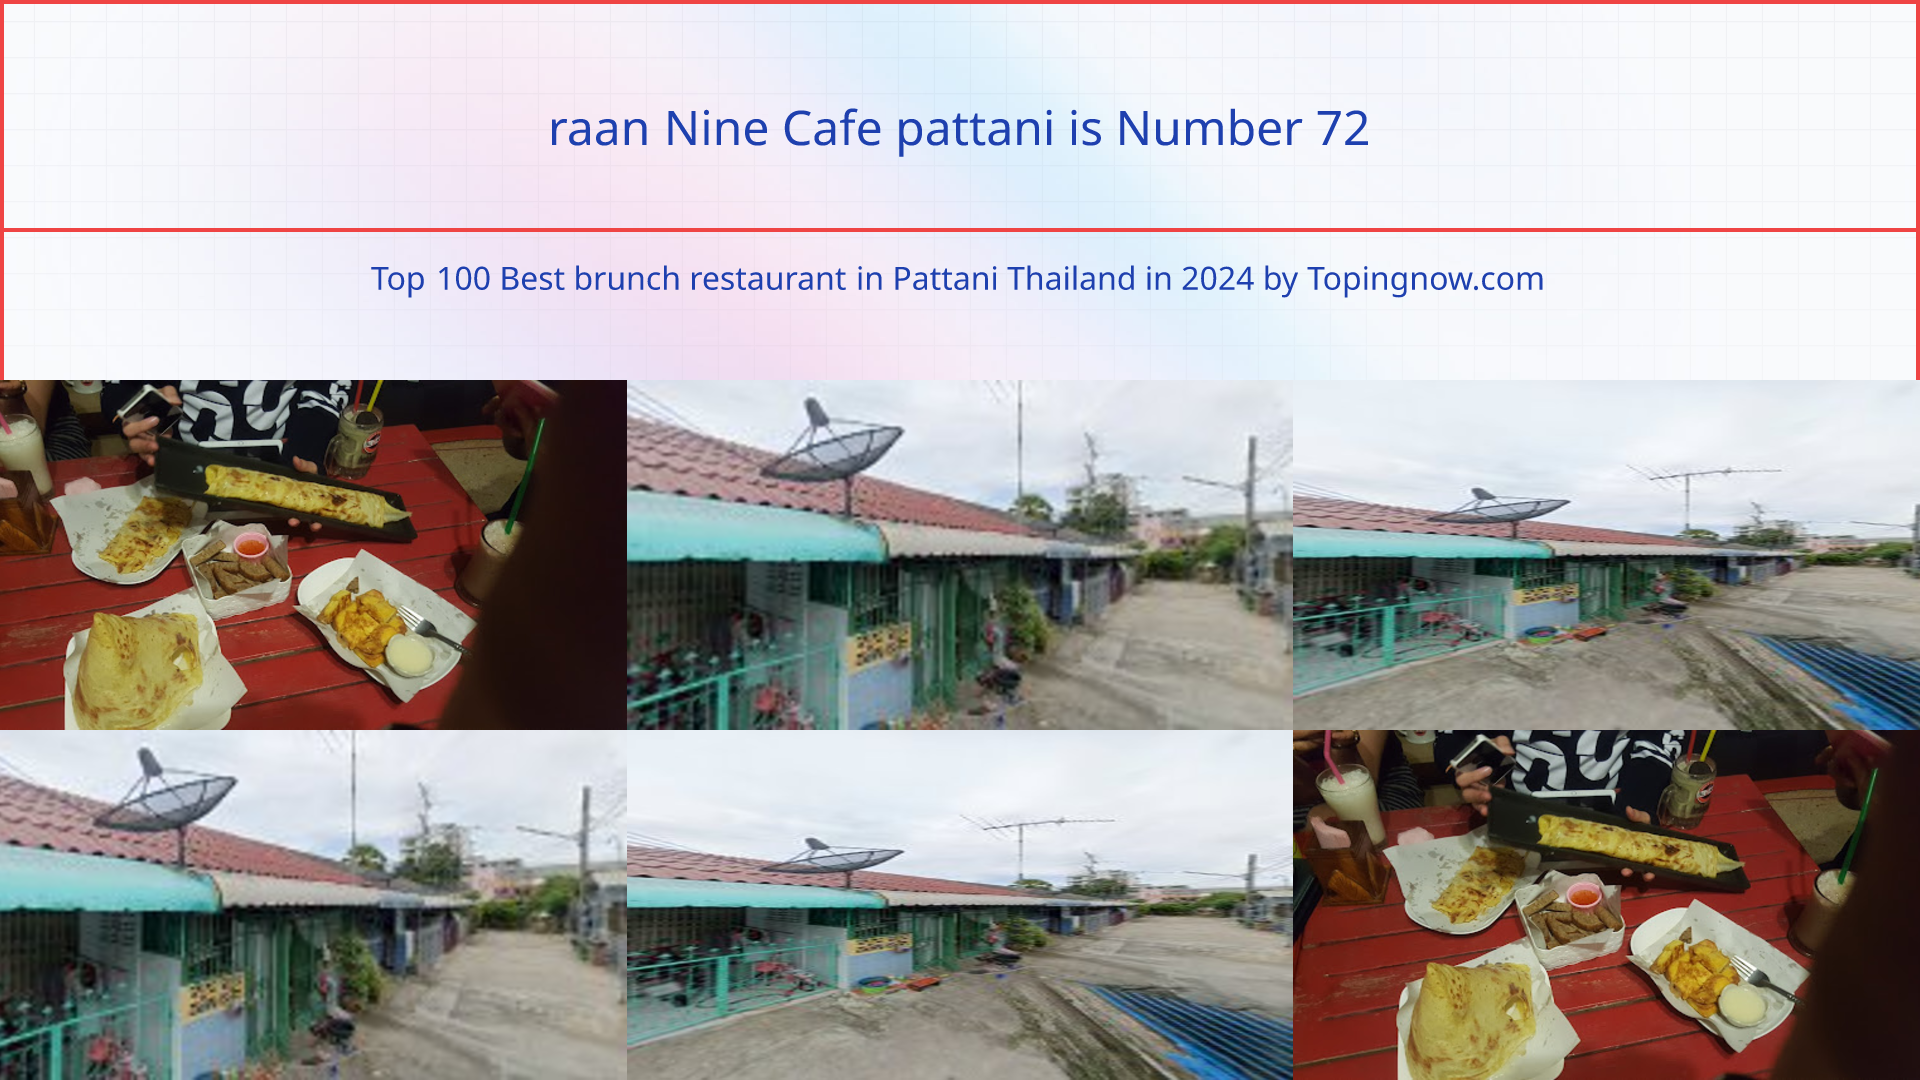 raan Nine Cafe pattani: Top 100 Best brunch restaurant in Pattani Thailand in 2024